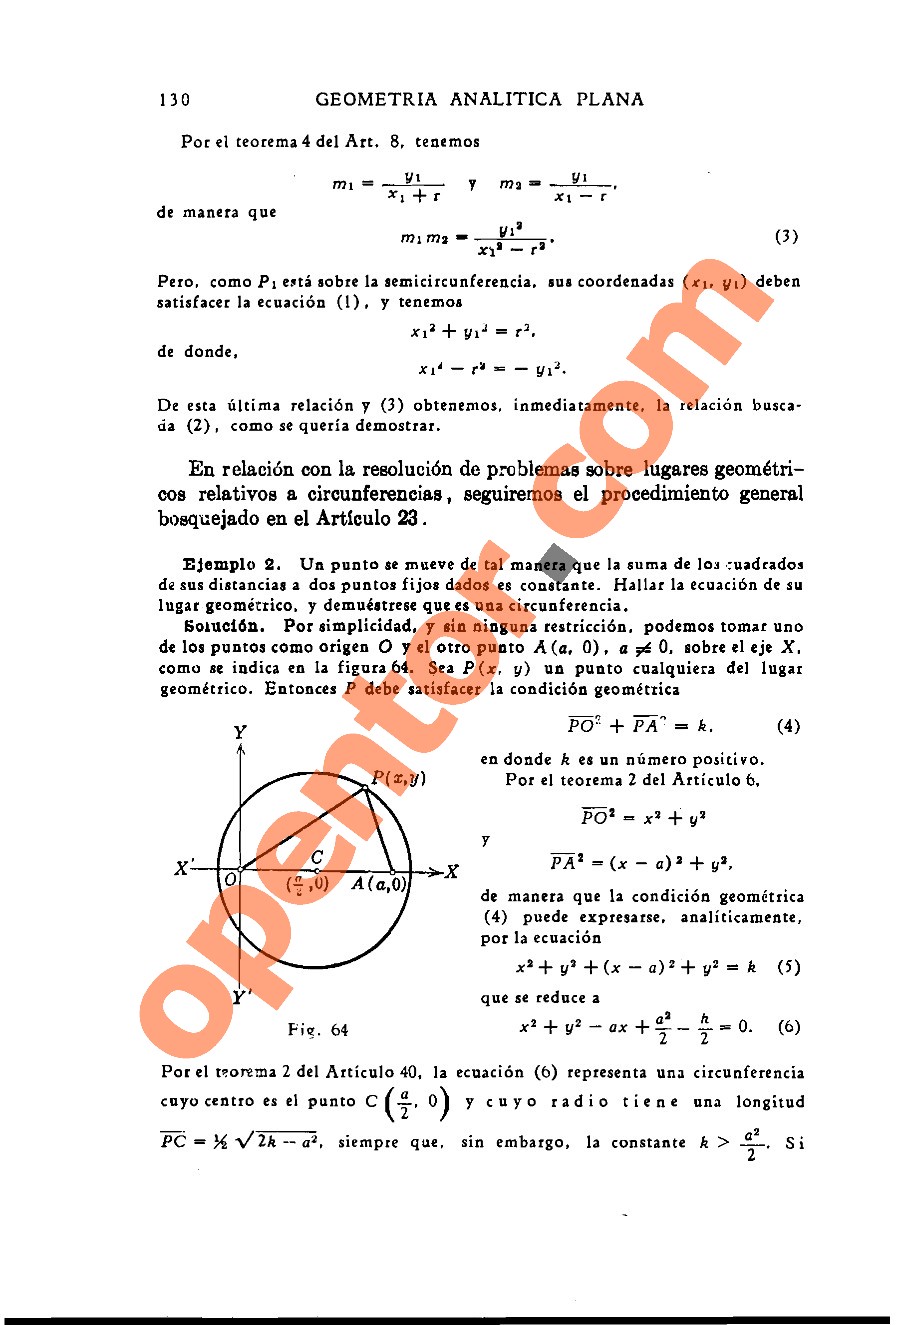 Geometría Analítica de Lehmann - Página 130